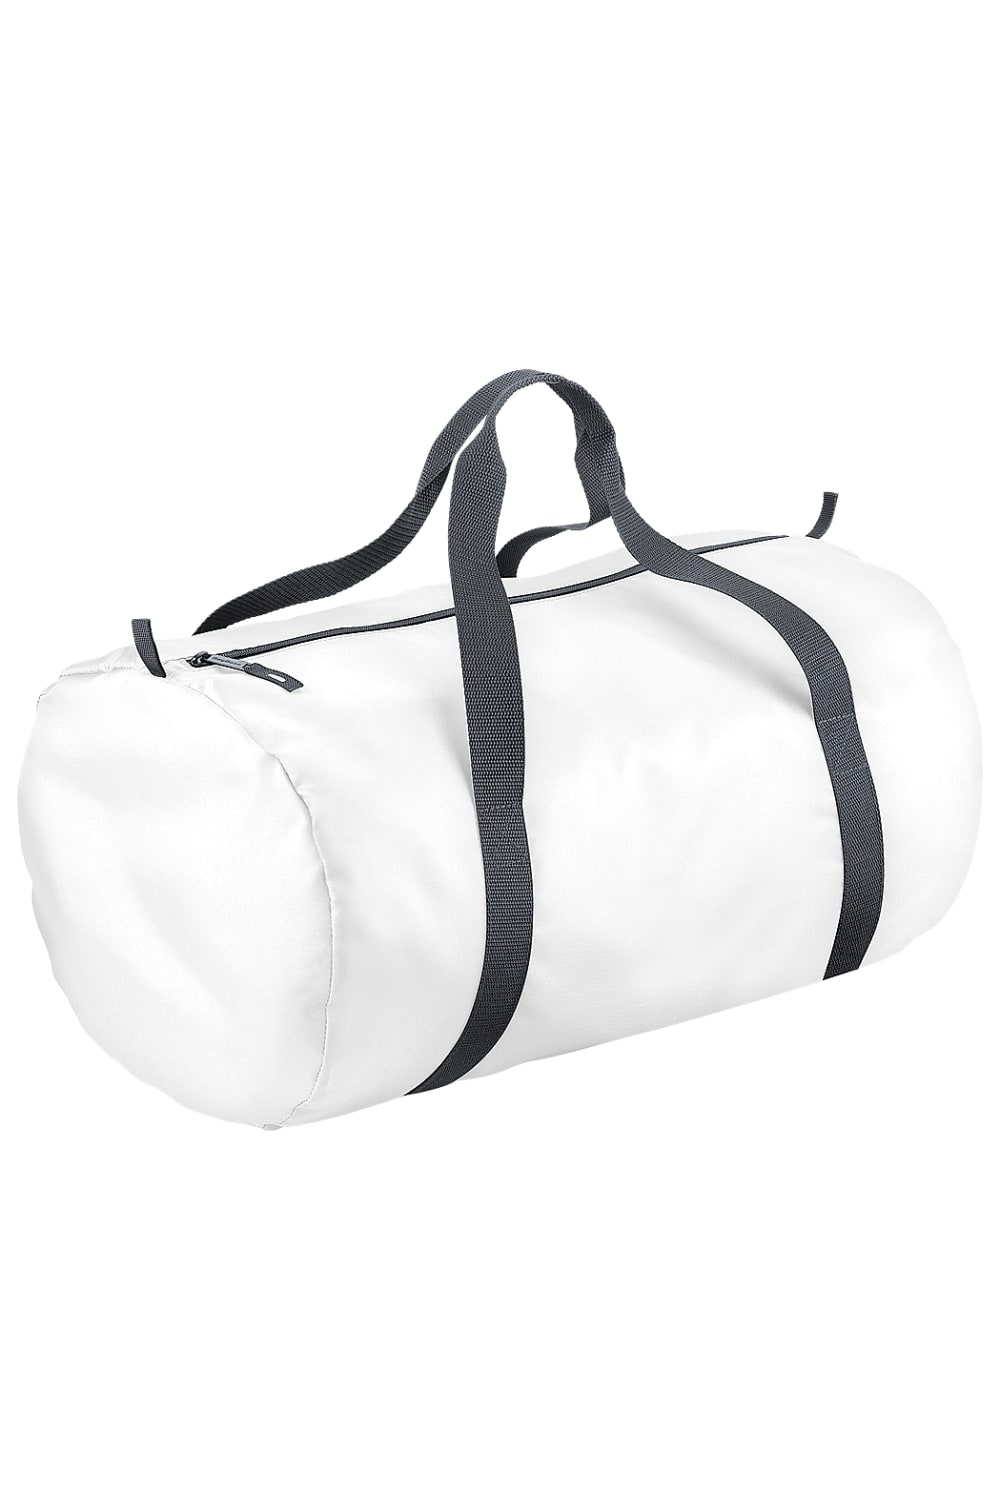 Packaway Barrel Bag/Duffel Water Resistant Travel Bag, 8 Gallons - White